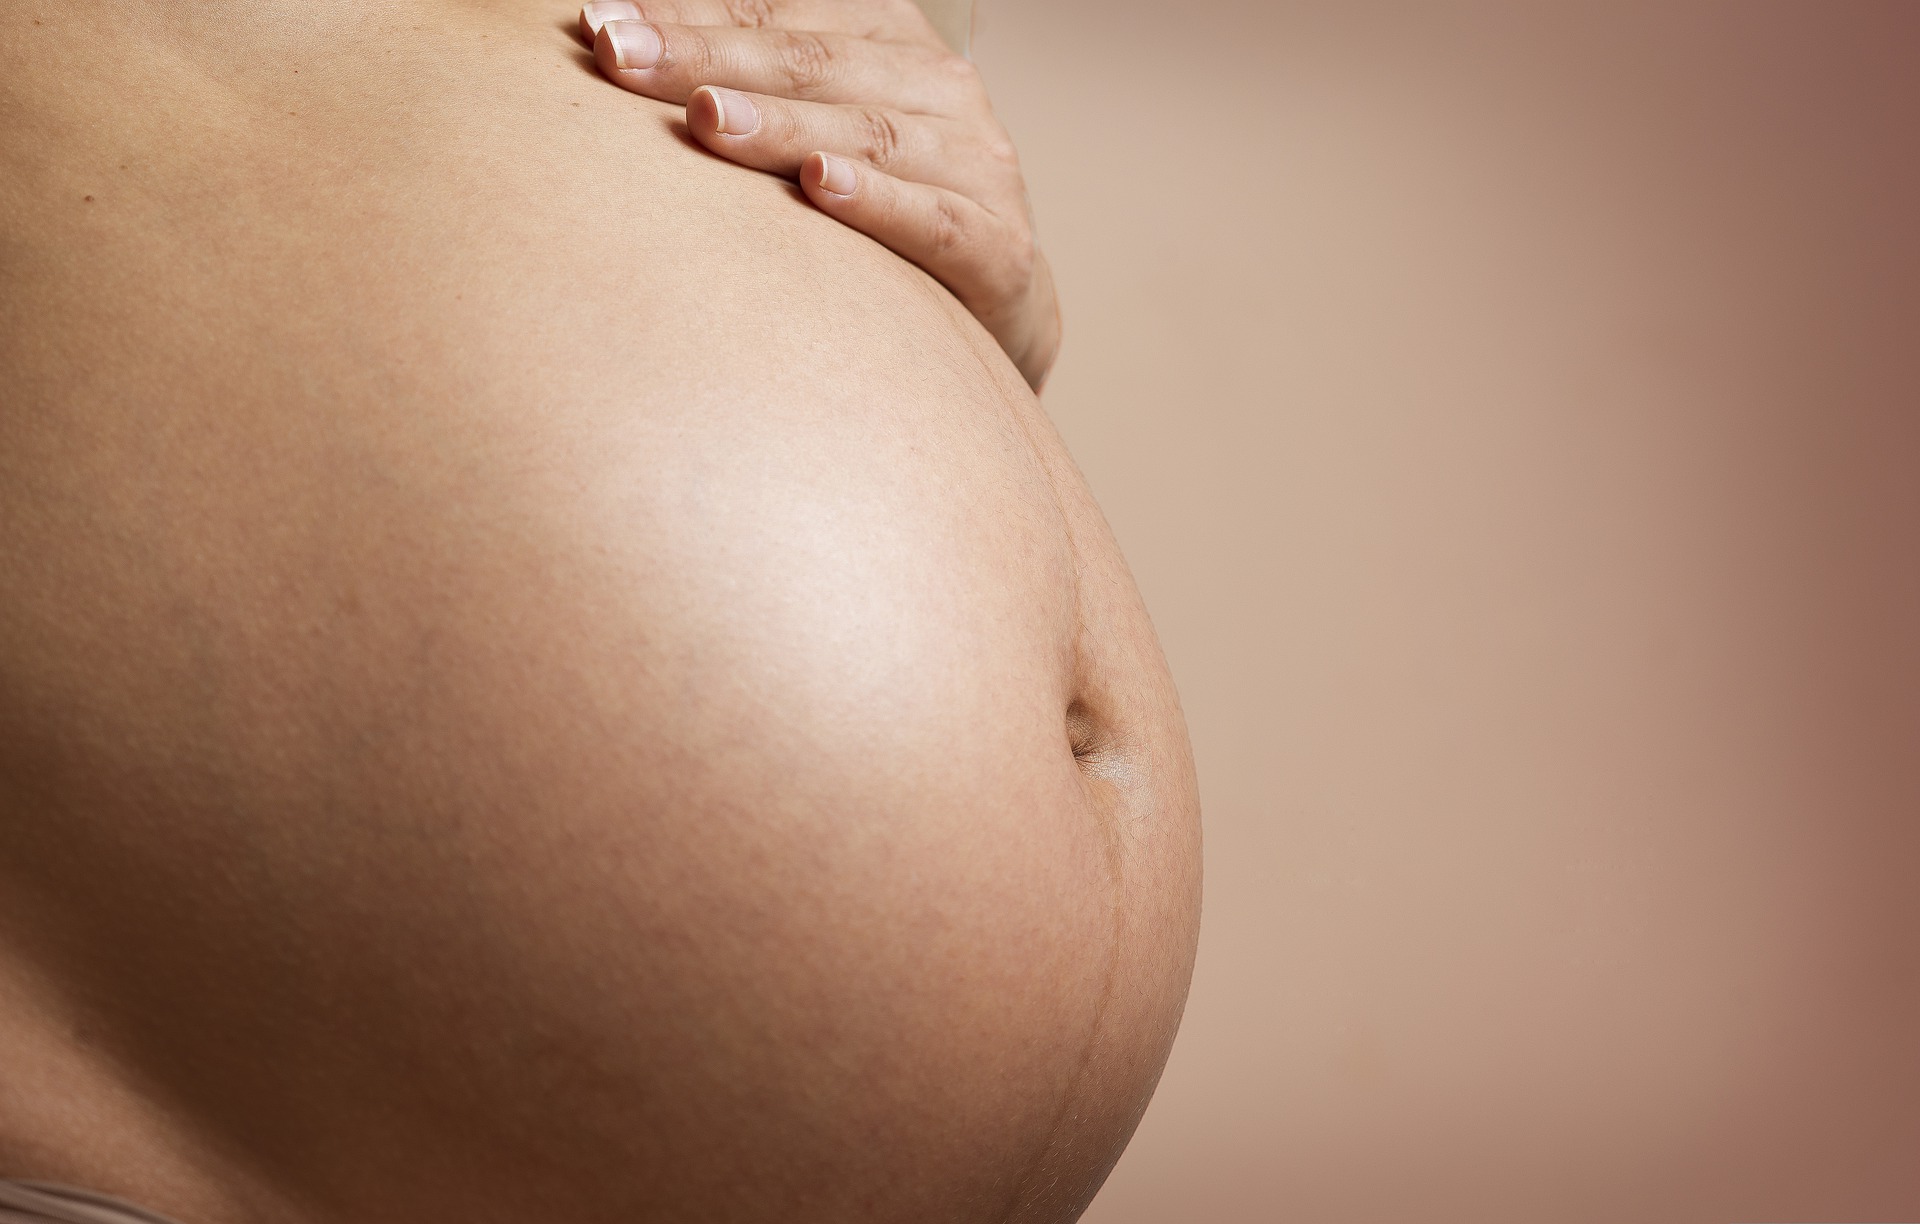 Cuanto más fume una mujer embarazada, mayor será el riesgo para su bebé de nacer con bajo peso (Pixabay)